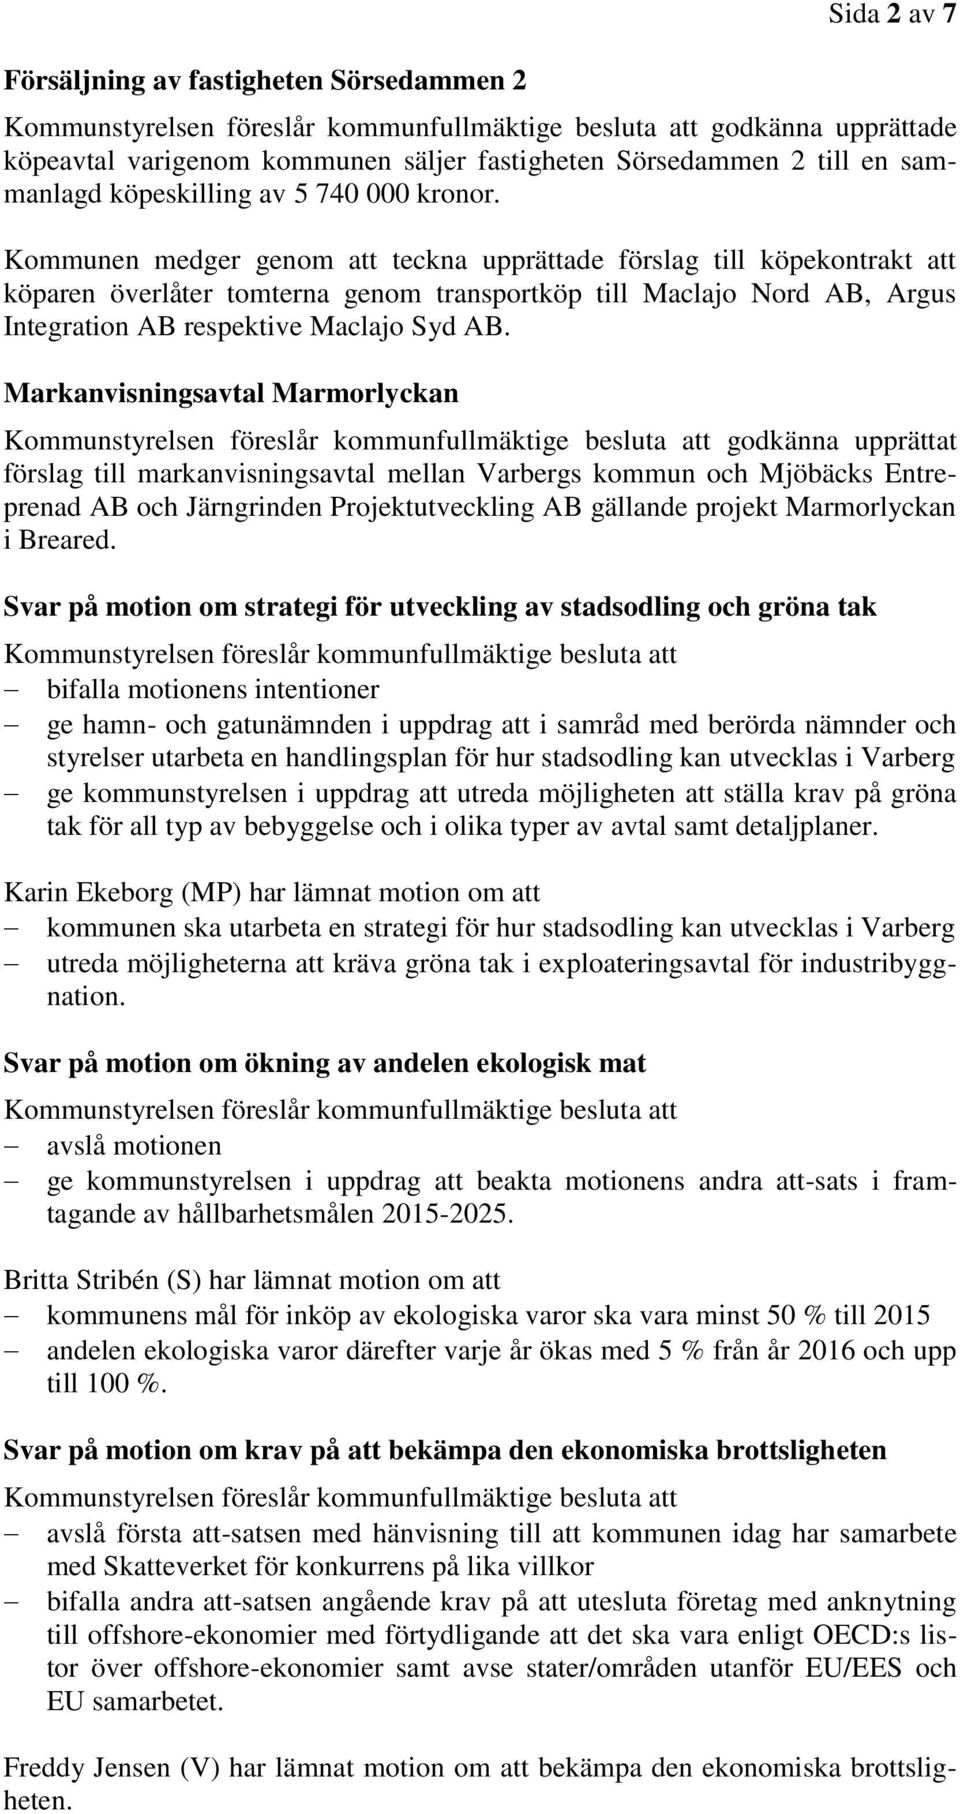 Markanvisningsavtal Marmorlyckan godkänna upprättat förslag till markanvisningsavtal mellan Varbergs kommun och Mjöbäcks Entreprenad AB och Järngrinden Projektutveckling AB gällande projekt